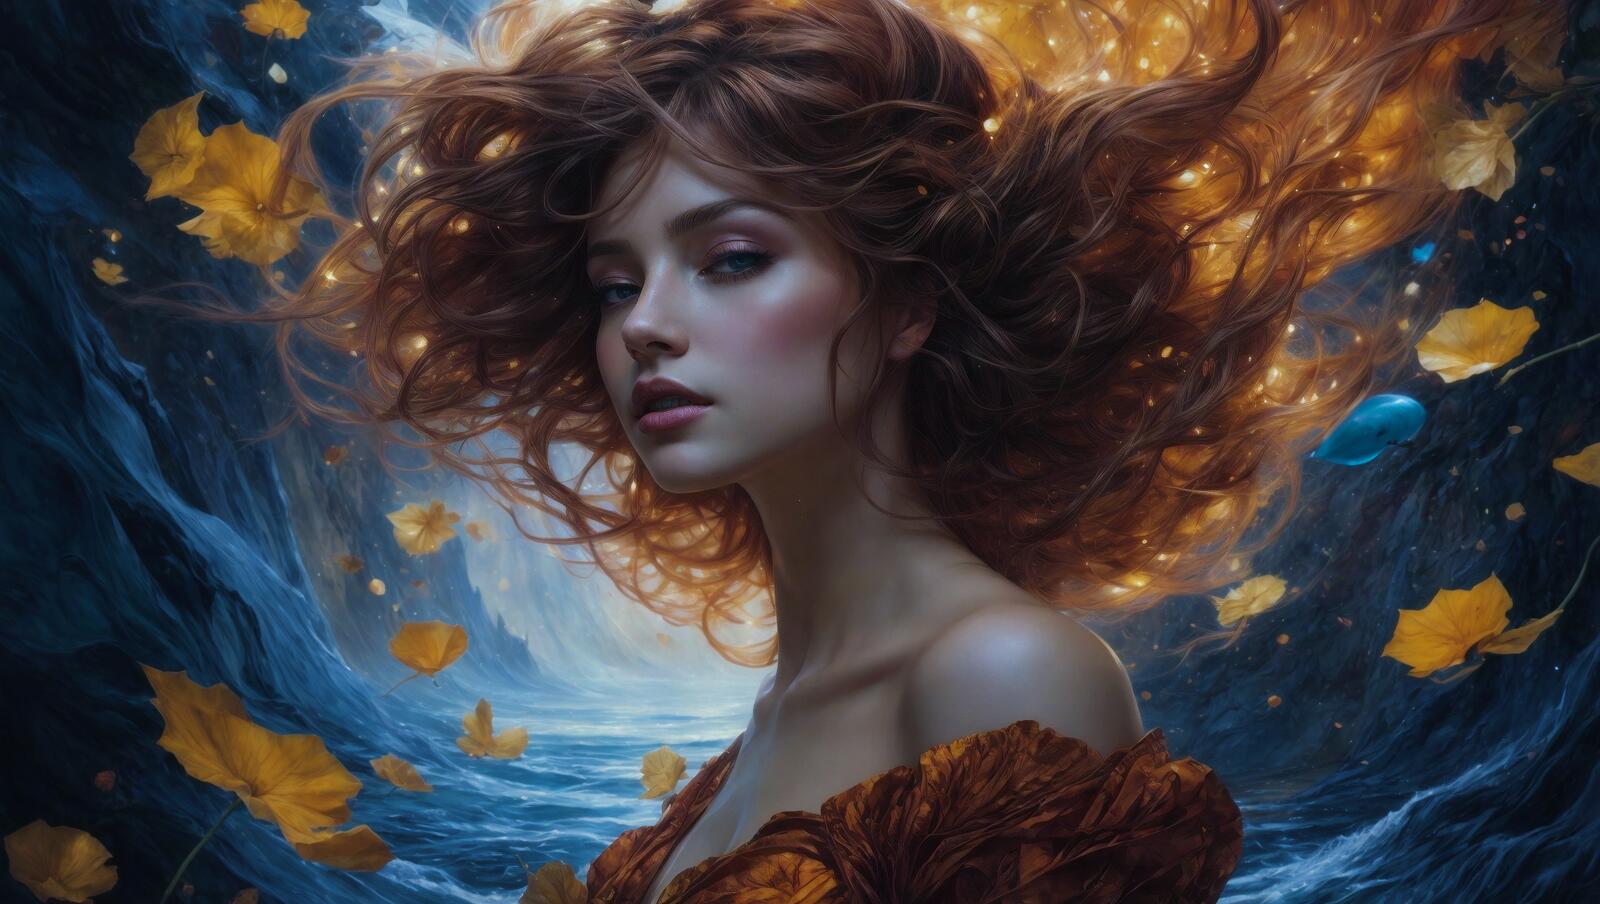 Бесплатное фото Художественная картина с изображением женщины с рыжими волосами